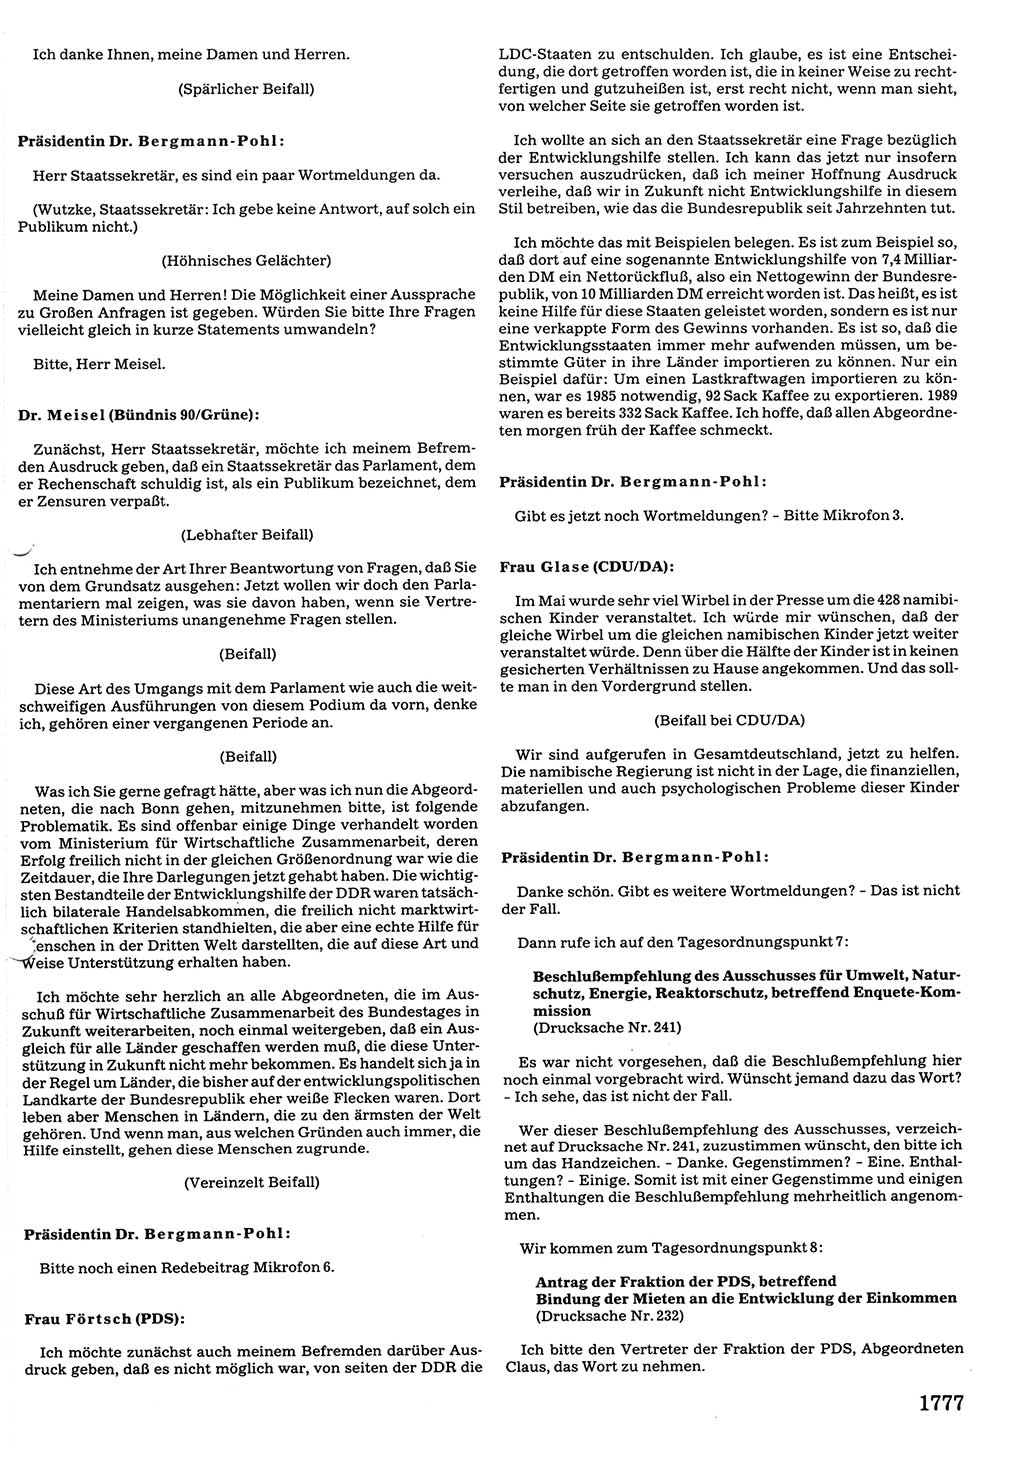 Tagungen der Volkskammer (VK) der Deutschen Demokratischen Republik (DDR), 10. Wahlperiode 1990, Seite 1777 (VK. DDR 10. WP. 1990, Prot. Tg. 1-38, 5.4.-2.10.1990, S. 1777)